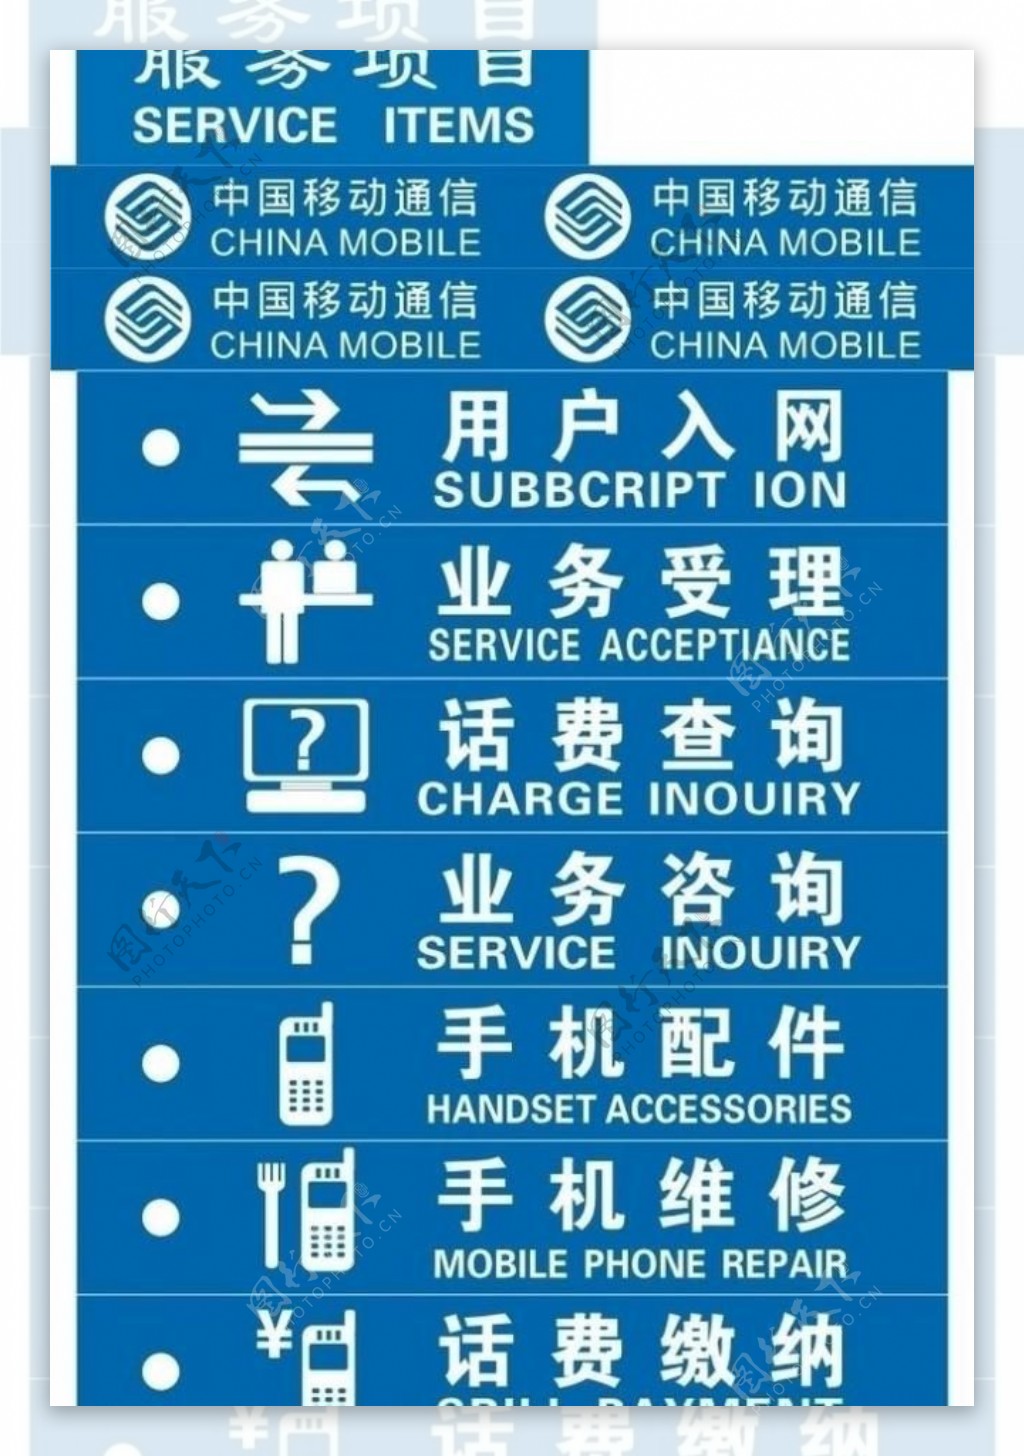 中国移动服务项目图片